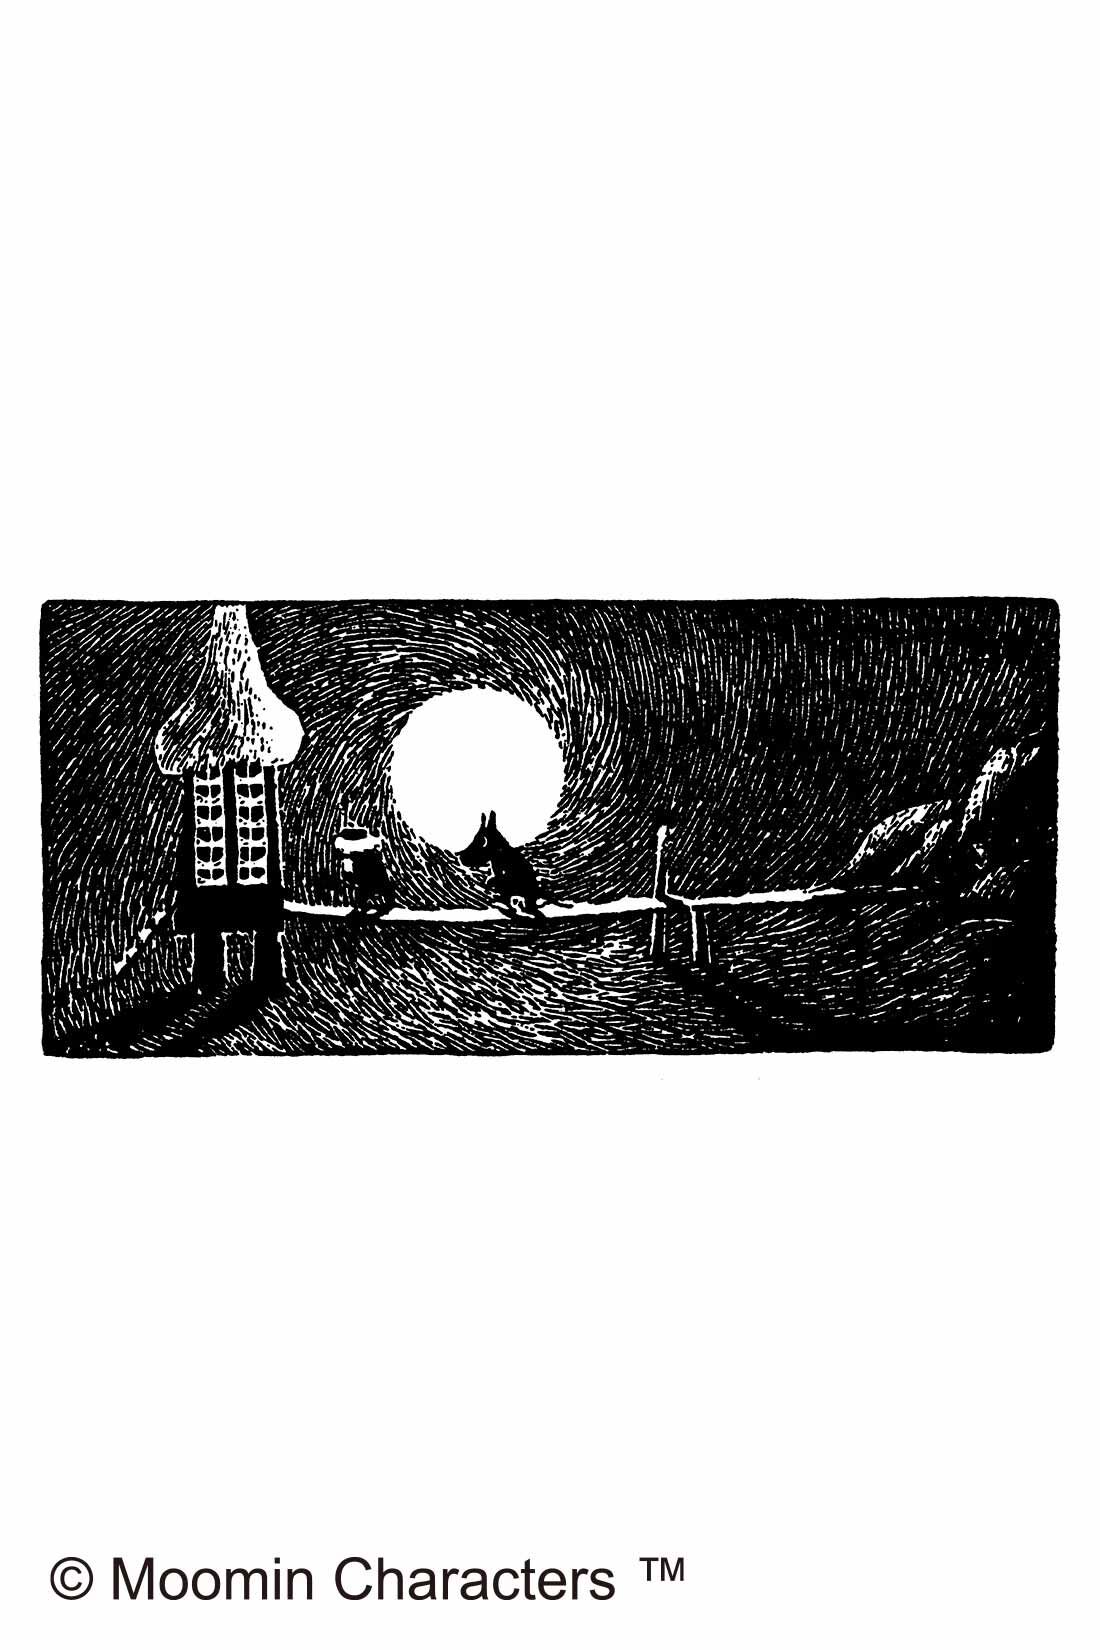 シロップ. 特急便|【3～10日でお届け】　ムーミン小説の世界を楽しむ　しっかりまちのななめ掛けバッグ|ムーミンが水あび小屋に向かうシーン『ムーミン谷の冬』から。大きな月が印象的。